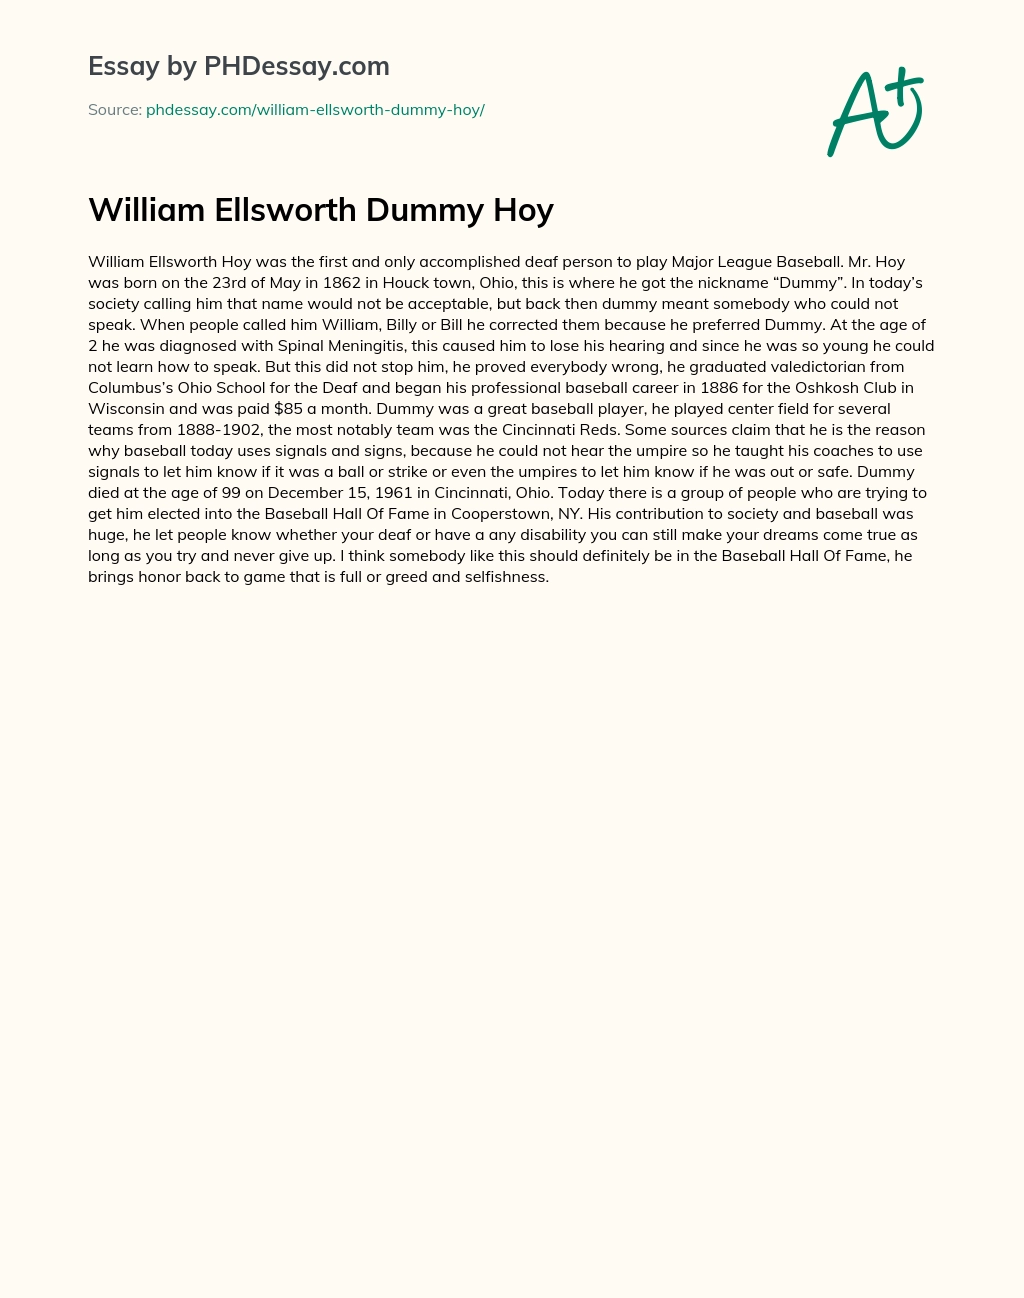 William Ellsworth Dummy Hoy essay